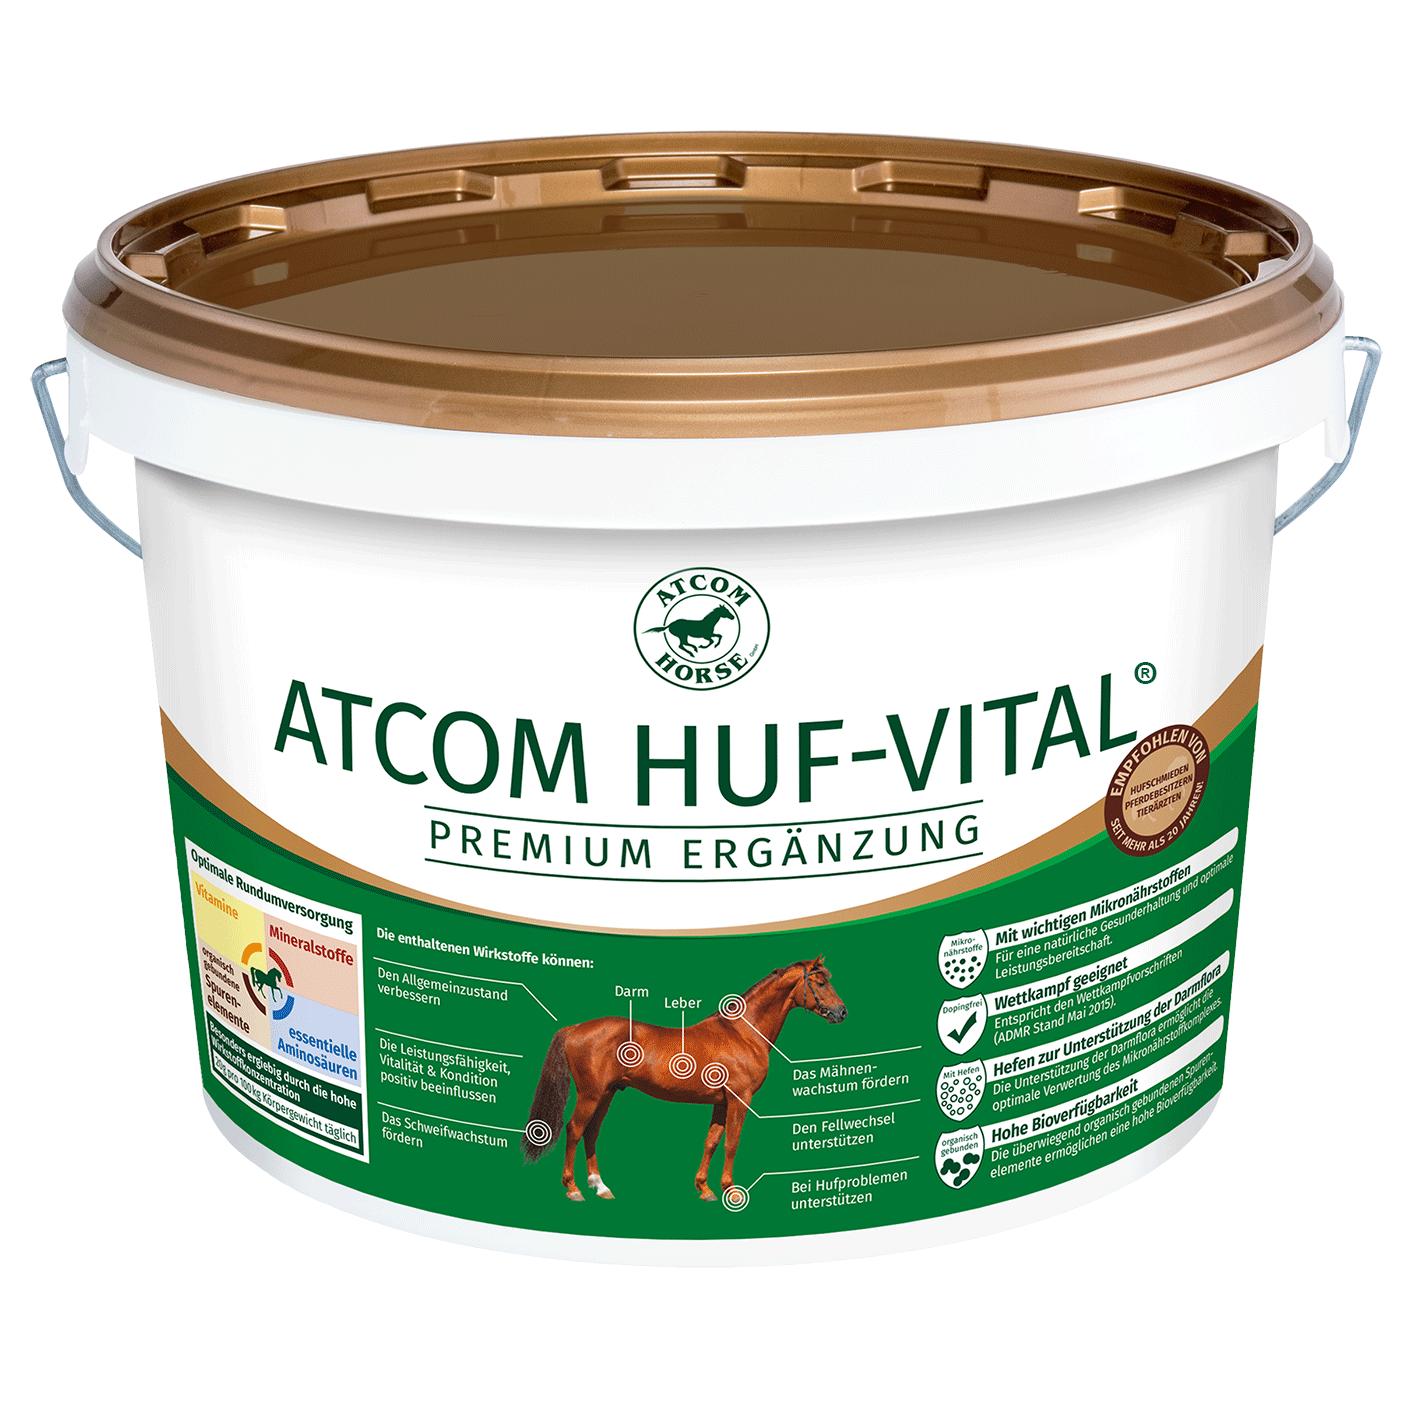 Atcom HUF-VITAL 25 kg Sack